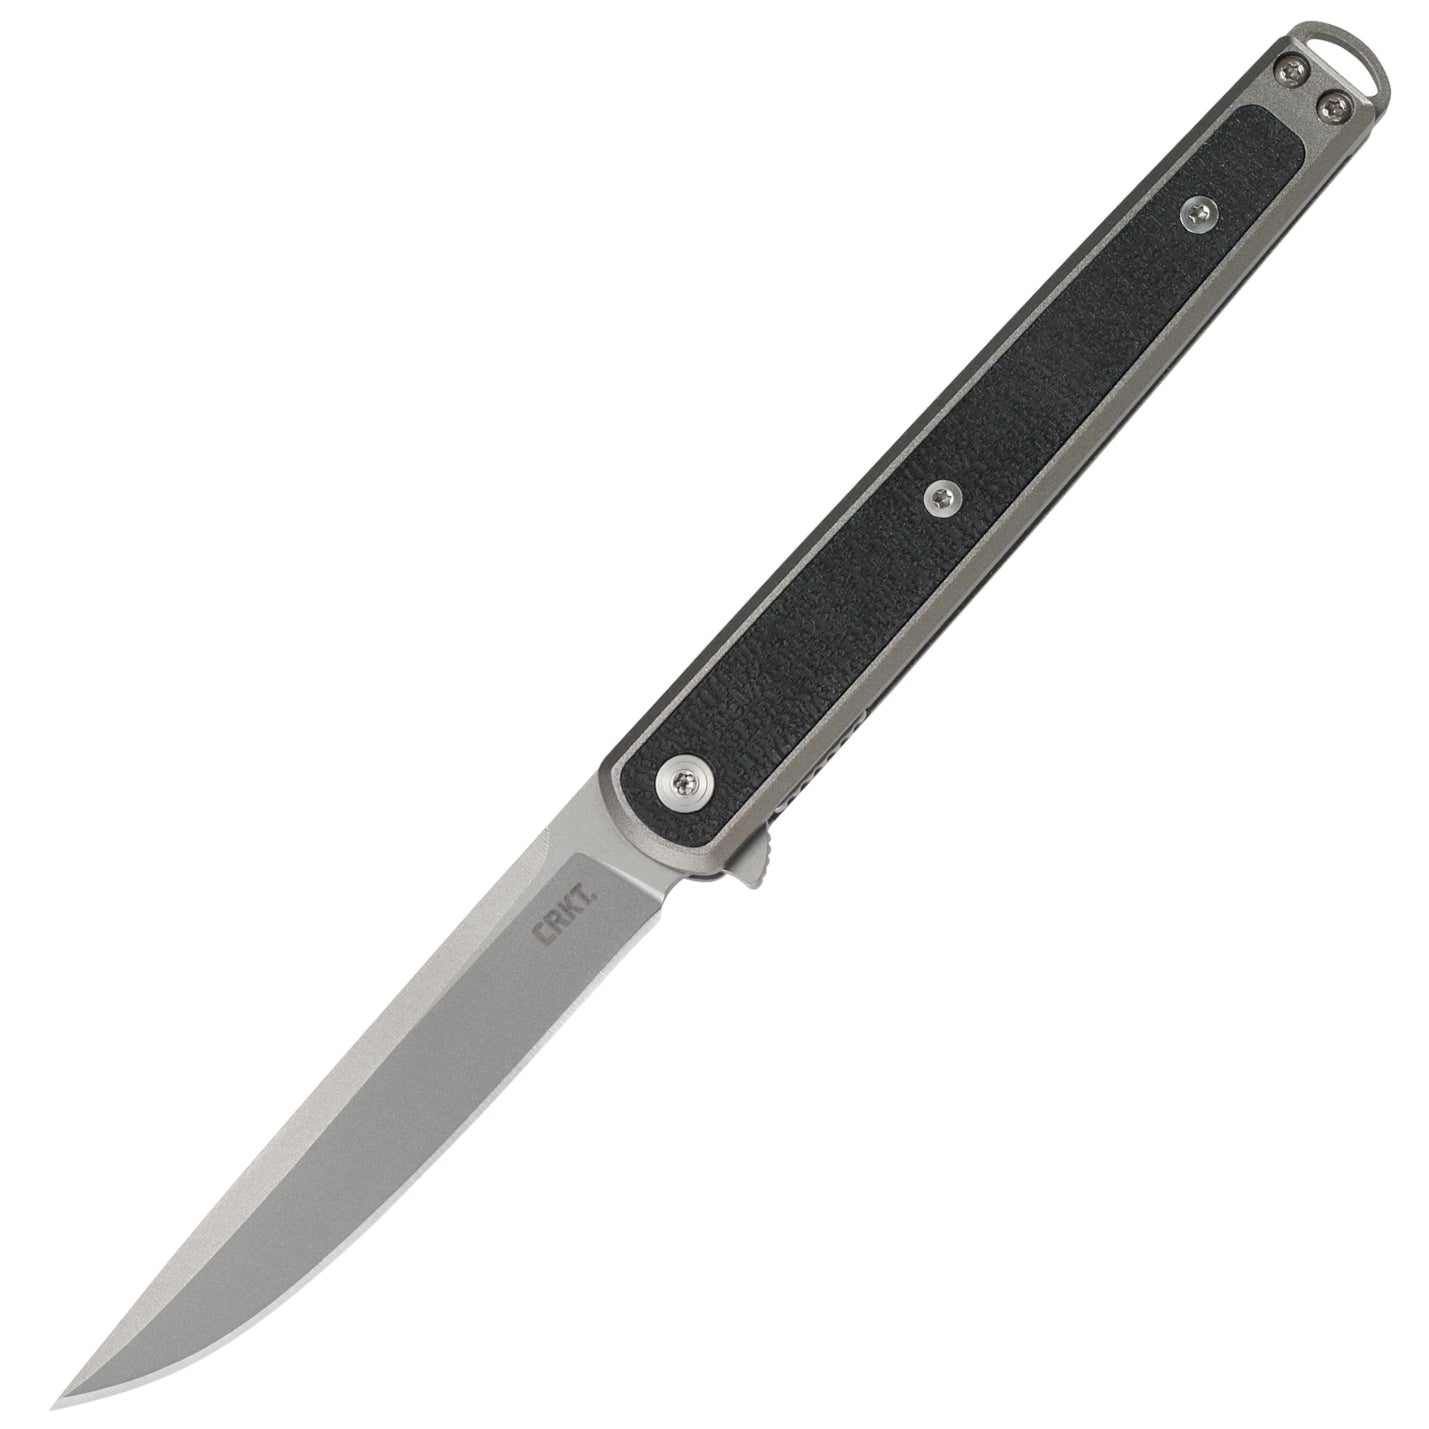 CRKT SEIS 3.32" IKBS Folding Knife - Richard Rogers - 7123